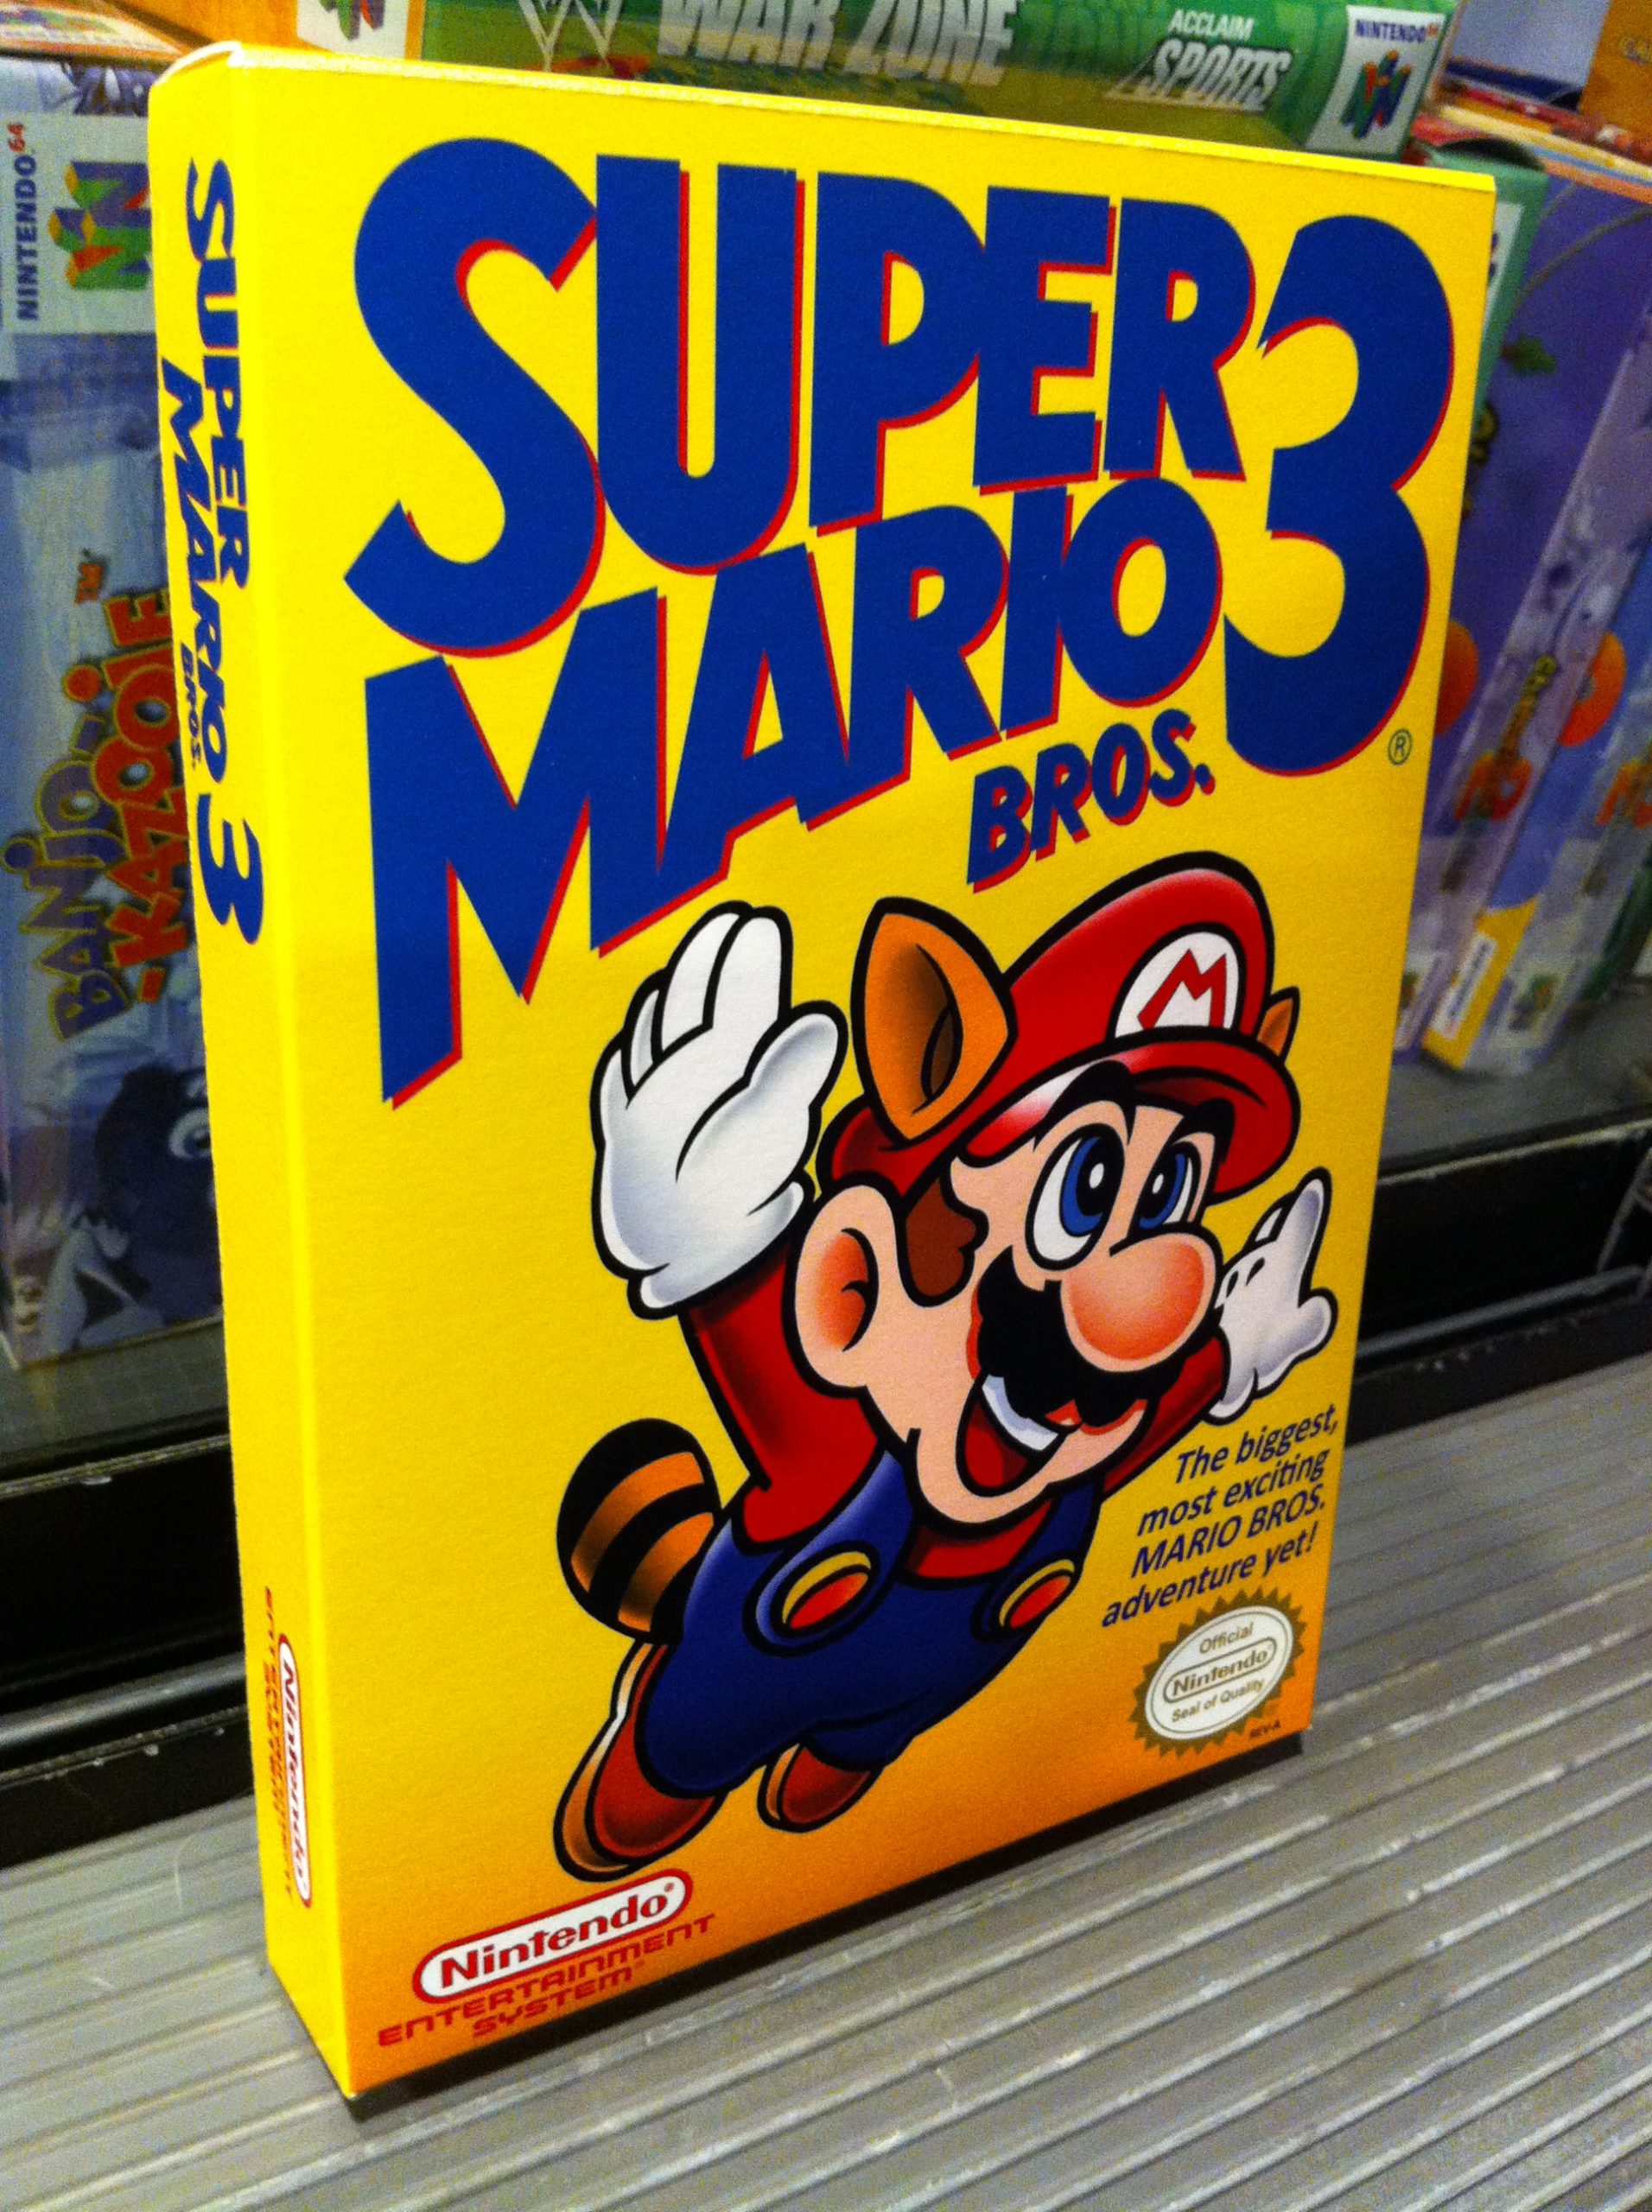 SUPER MARIO BROS 3 (NES) 